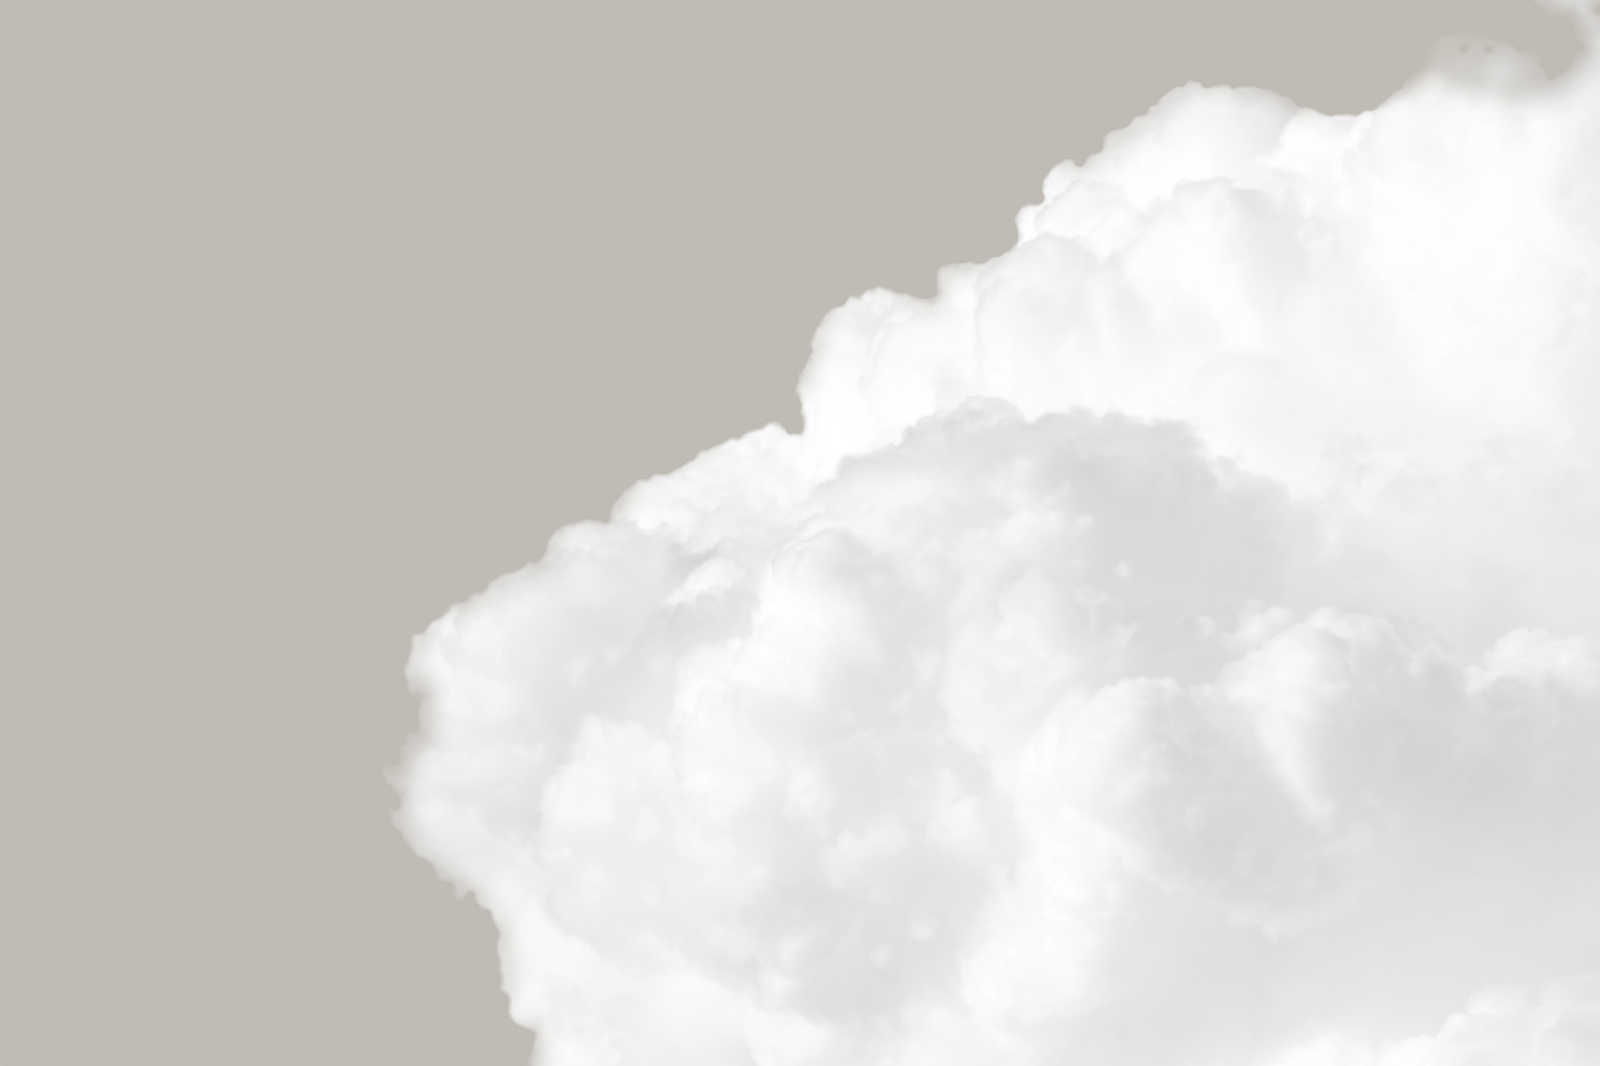             Toile avec nuages blancs dans un ciel gris - 0,90 m x 0,60 m
        